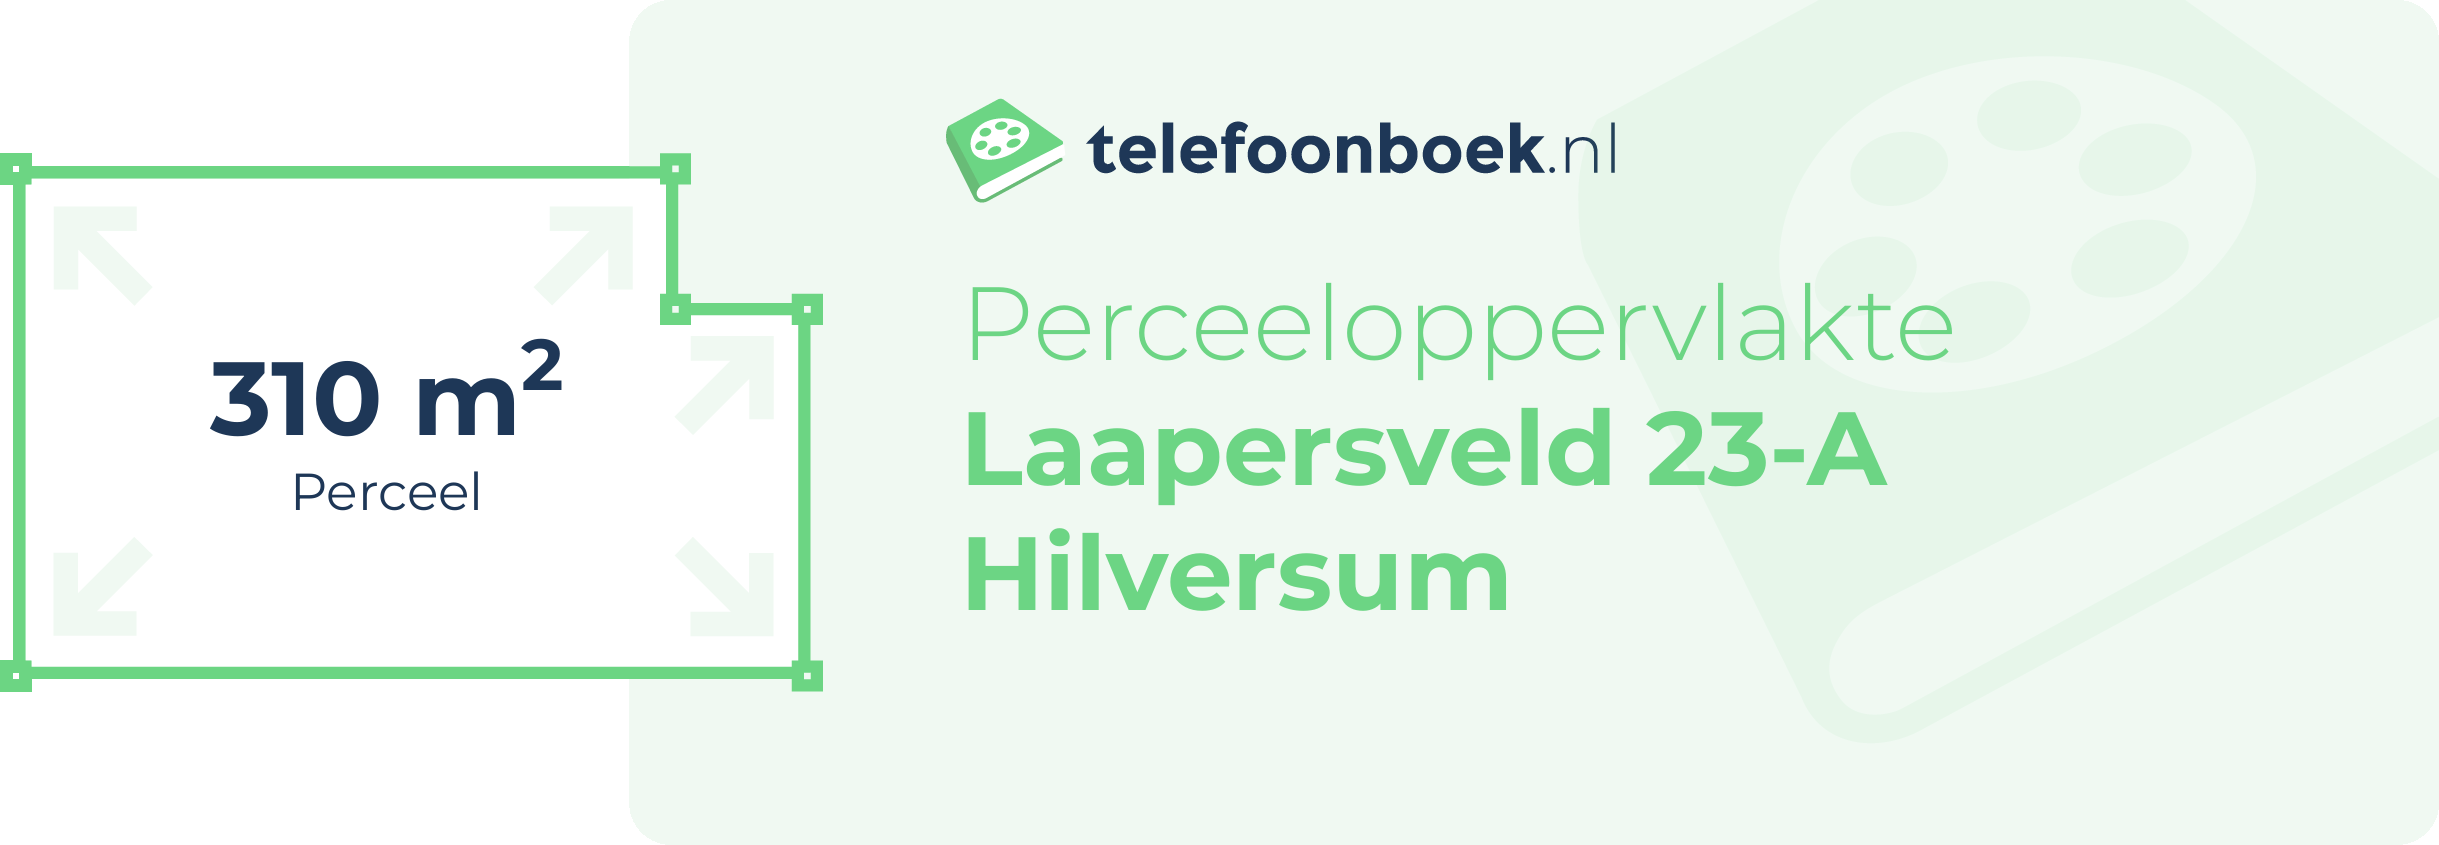 Perceeloppervlakte Laapersveld 23-A Hilversum